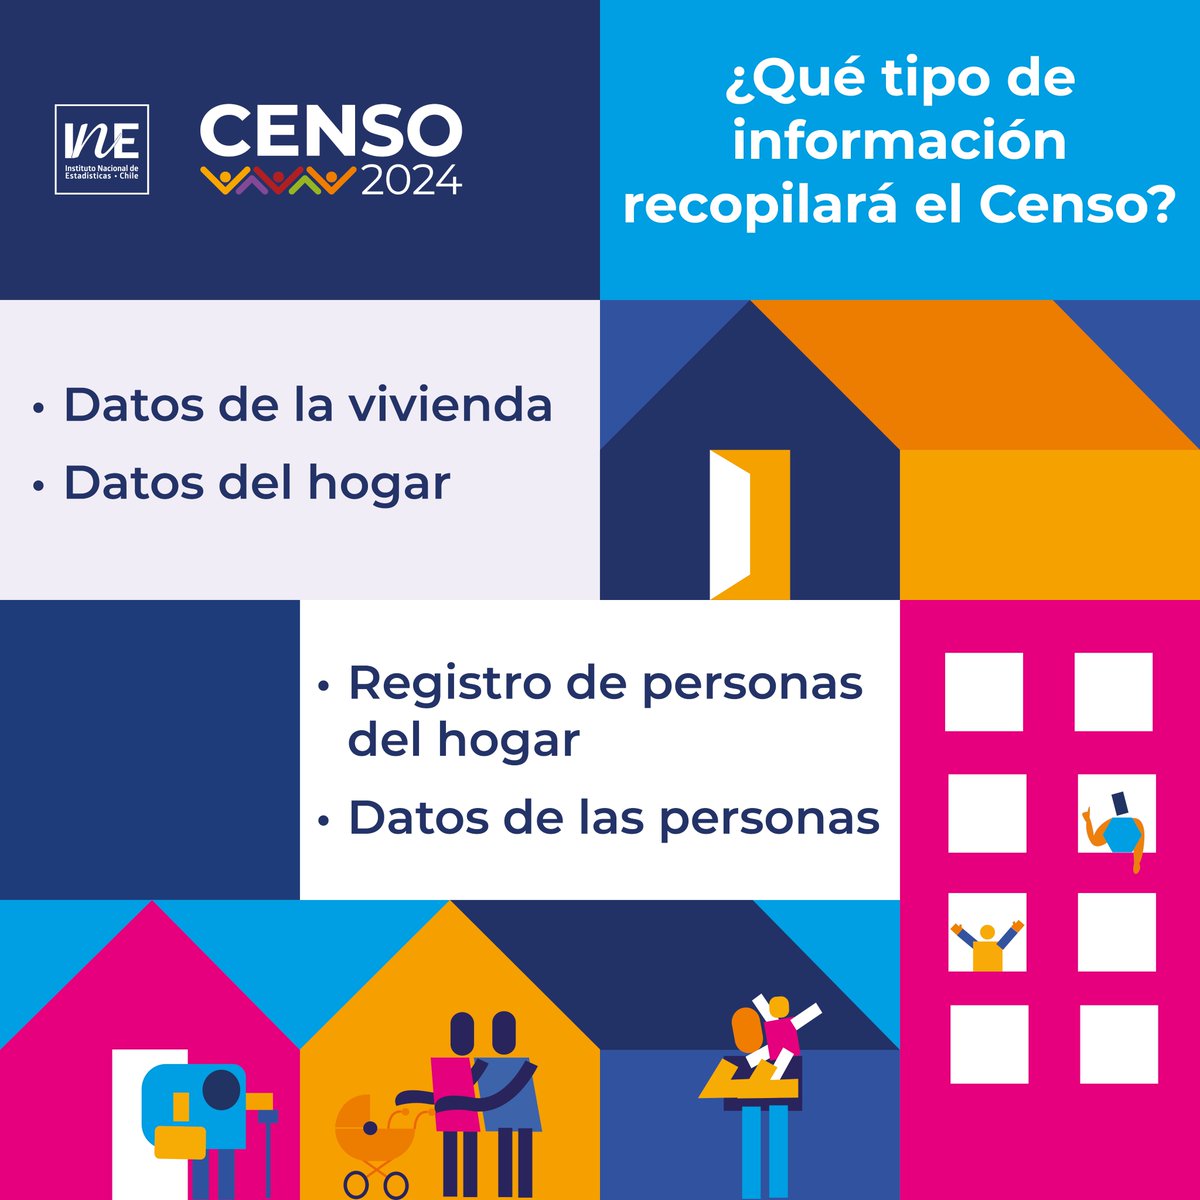 ¡Á𝐛𝐫𝐞𝐥𝐞 𝐥𝐚 𝐩𝐮𝐞𝐫𝐭𝐚 𝐚𝐥 𝐂𝐞𝐧𝐬𝐨!

📝 El #Censo se desarrollará entre marzo y junio de 2024. Tus datos aportarán en contribuir con el bienestar de #Chile en áreas como salud, educación, vivienda, entre muchas otras.

#CensoChile
#Censo2024
#SeVieneCenso